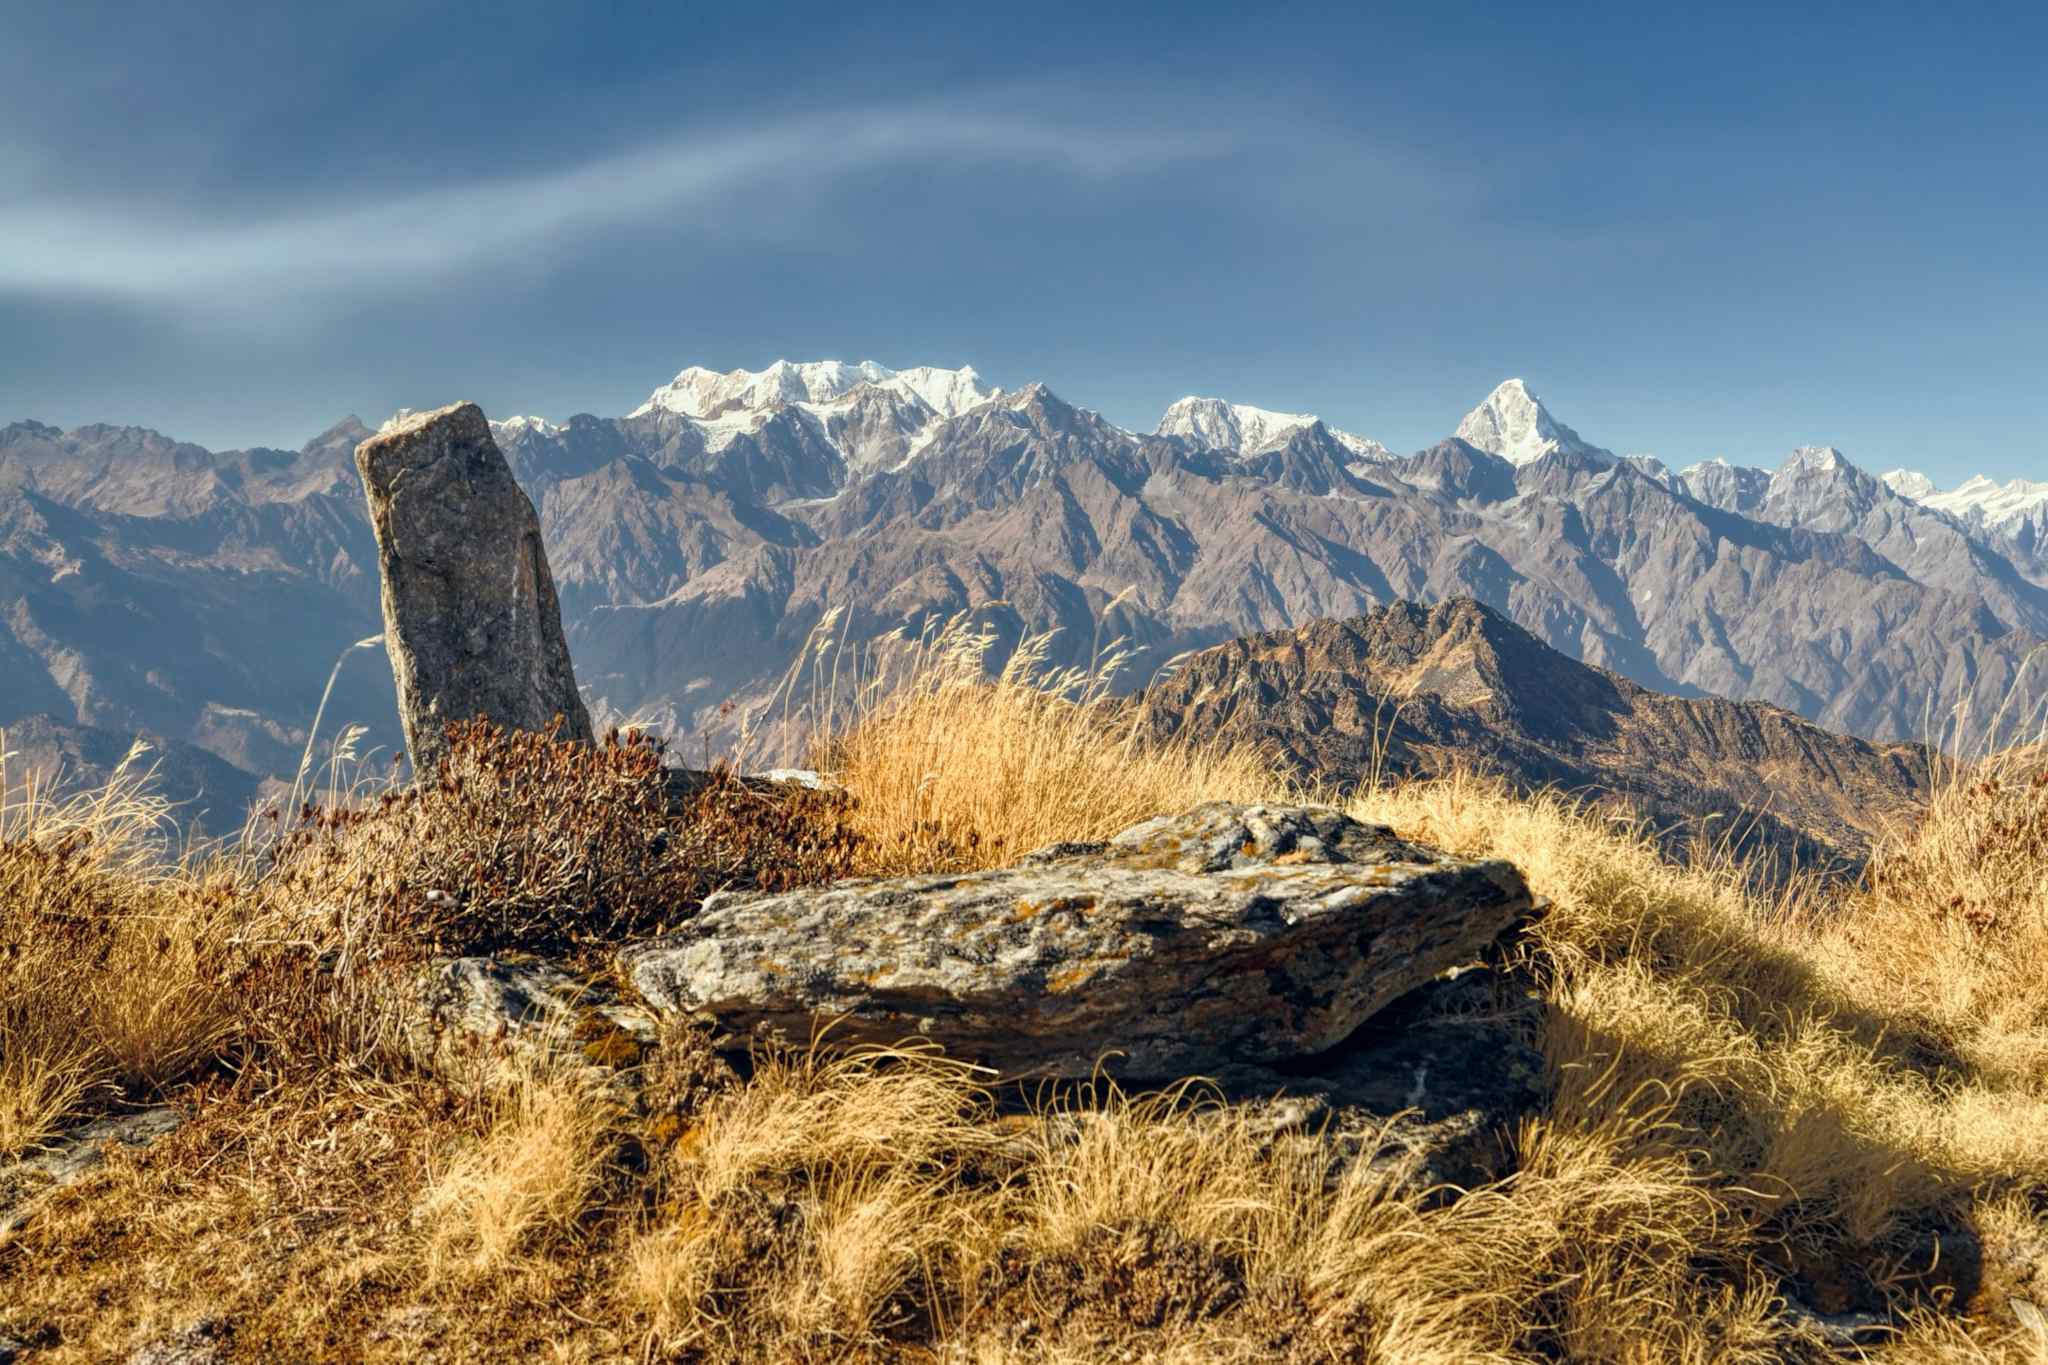 Top of Kuari Pass, India - Canva link: https://www.canva.com/photos/MADBlfMNy_E-kuari-pass/